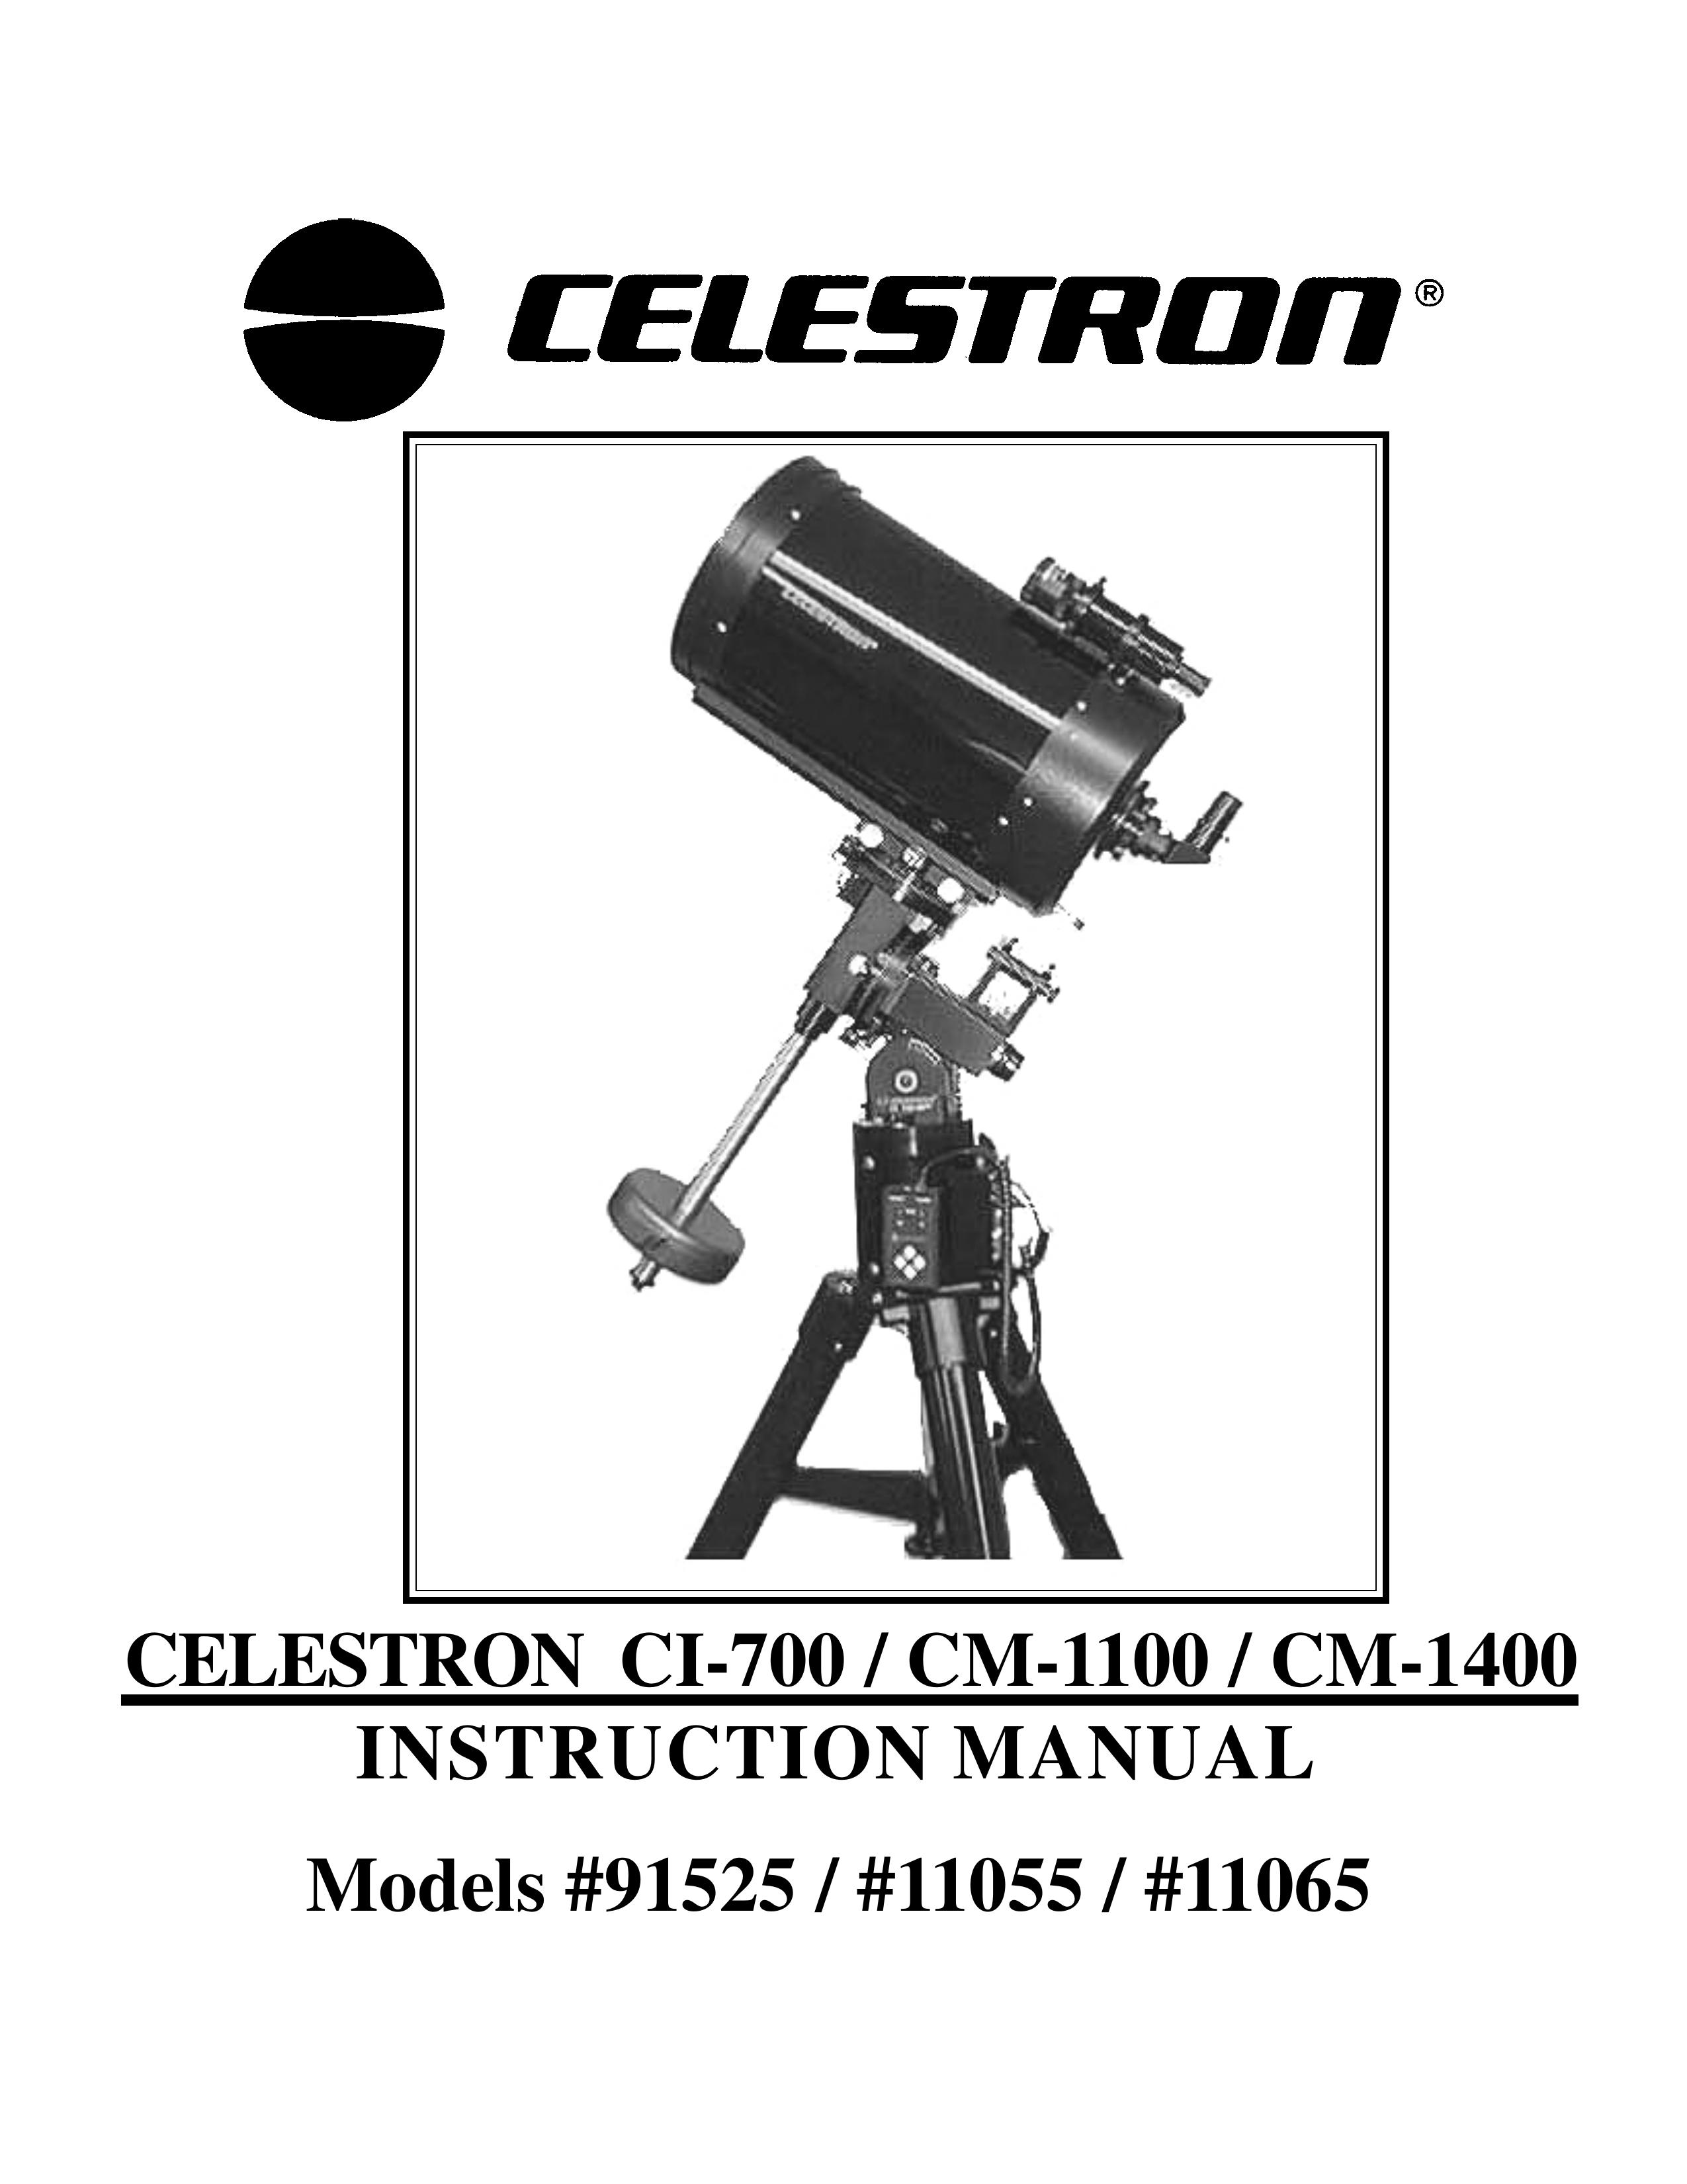 Celestron 11065 Telescope User Manual